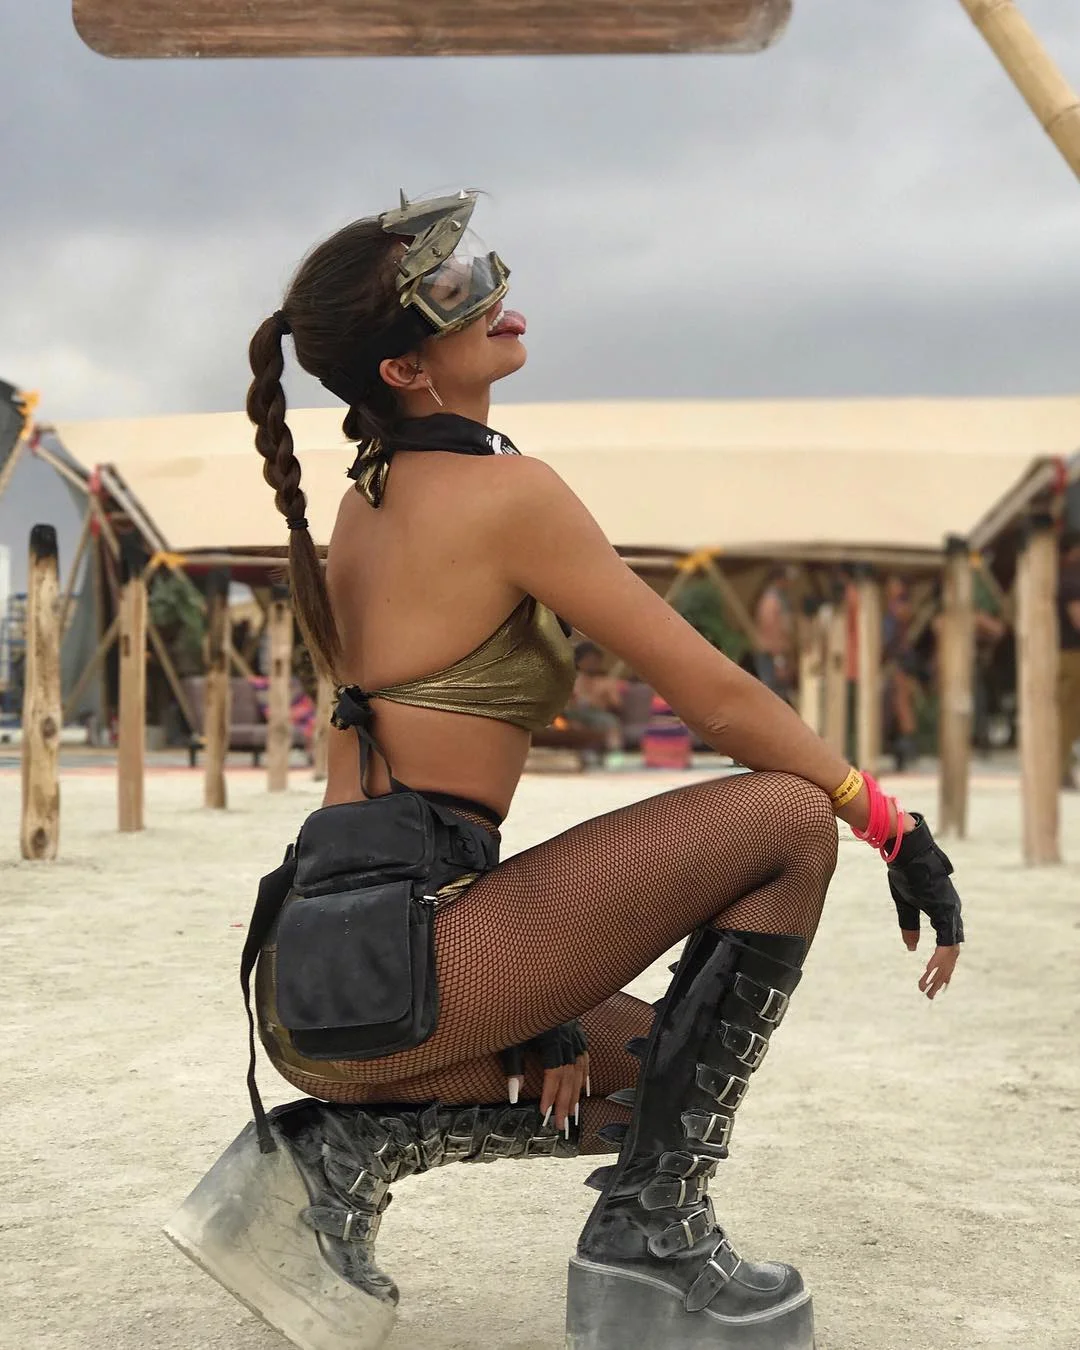 Пилюка, голі тіла та сучасне мистецтво: круті фото з фестивалю Burning Man 2017 - фото 336403